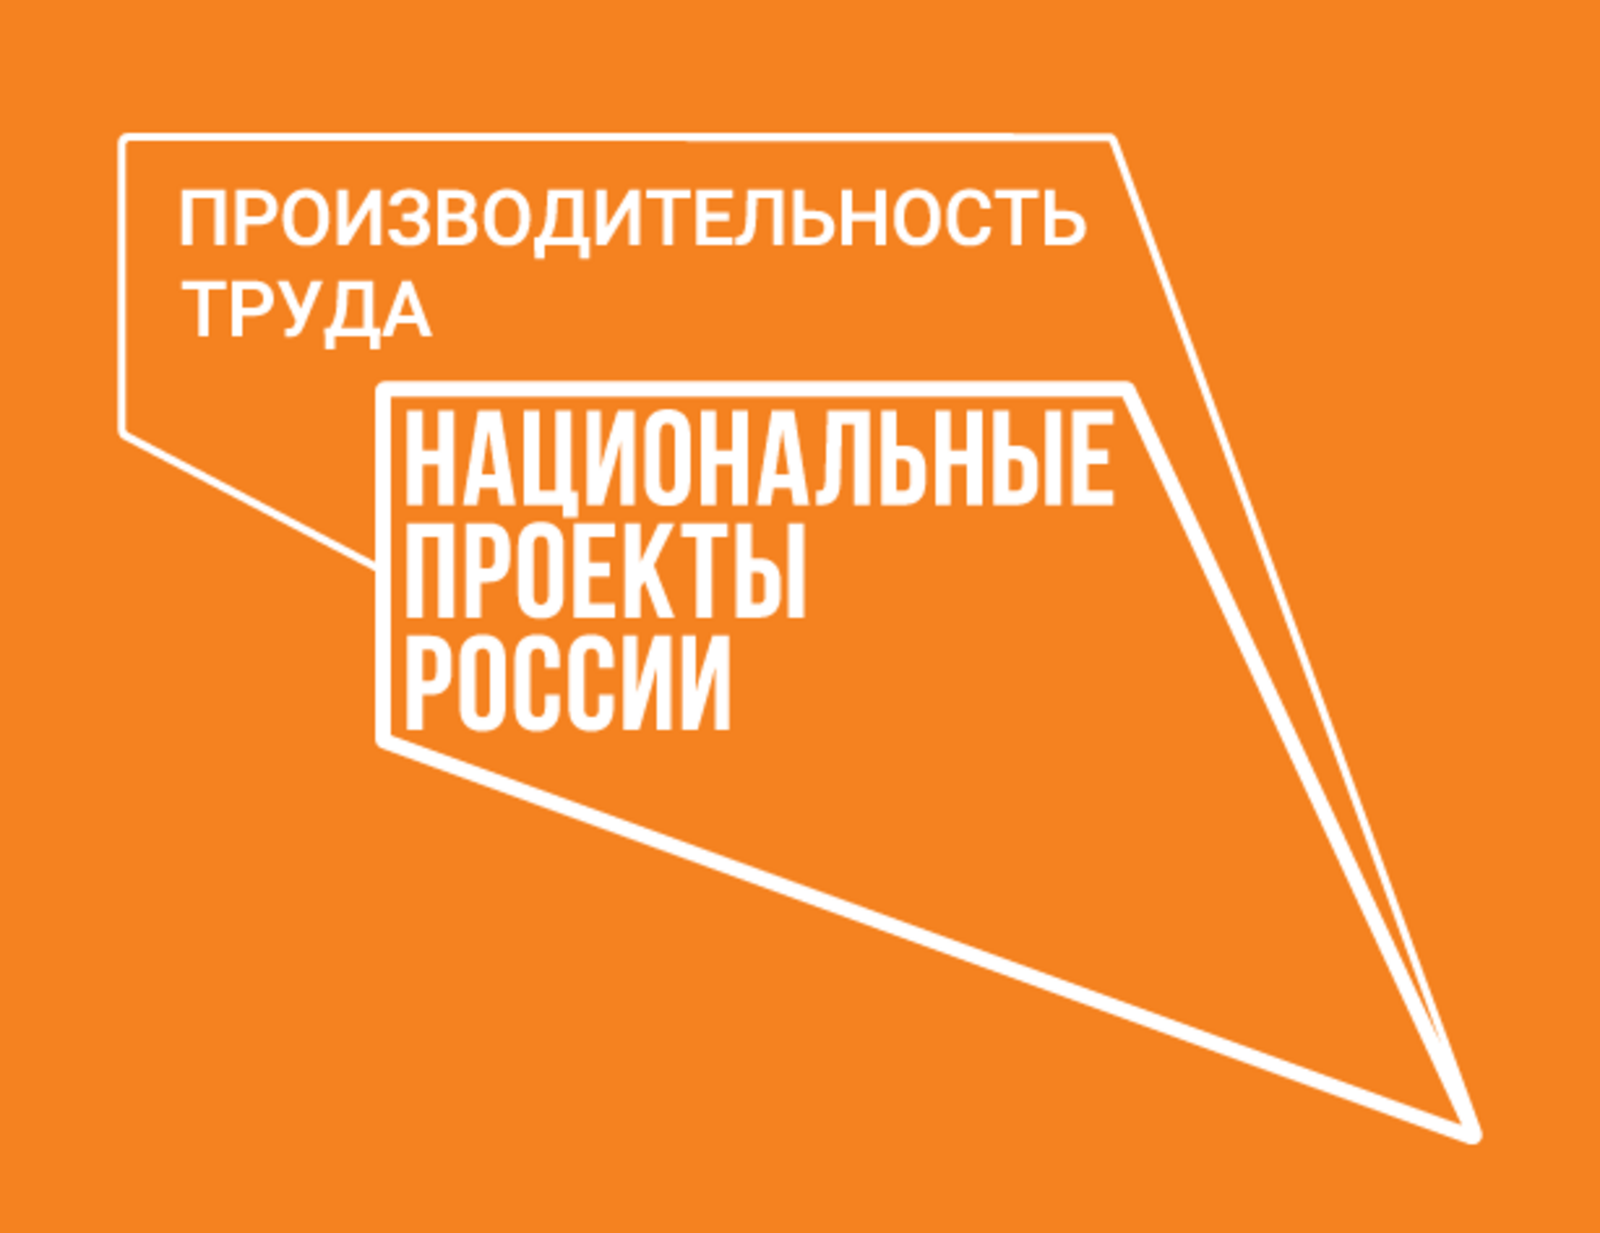 В Башкортостане на 36% перевыполнили план по количеству участников-нацпроекта «Производительность труда»